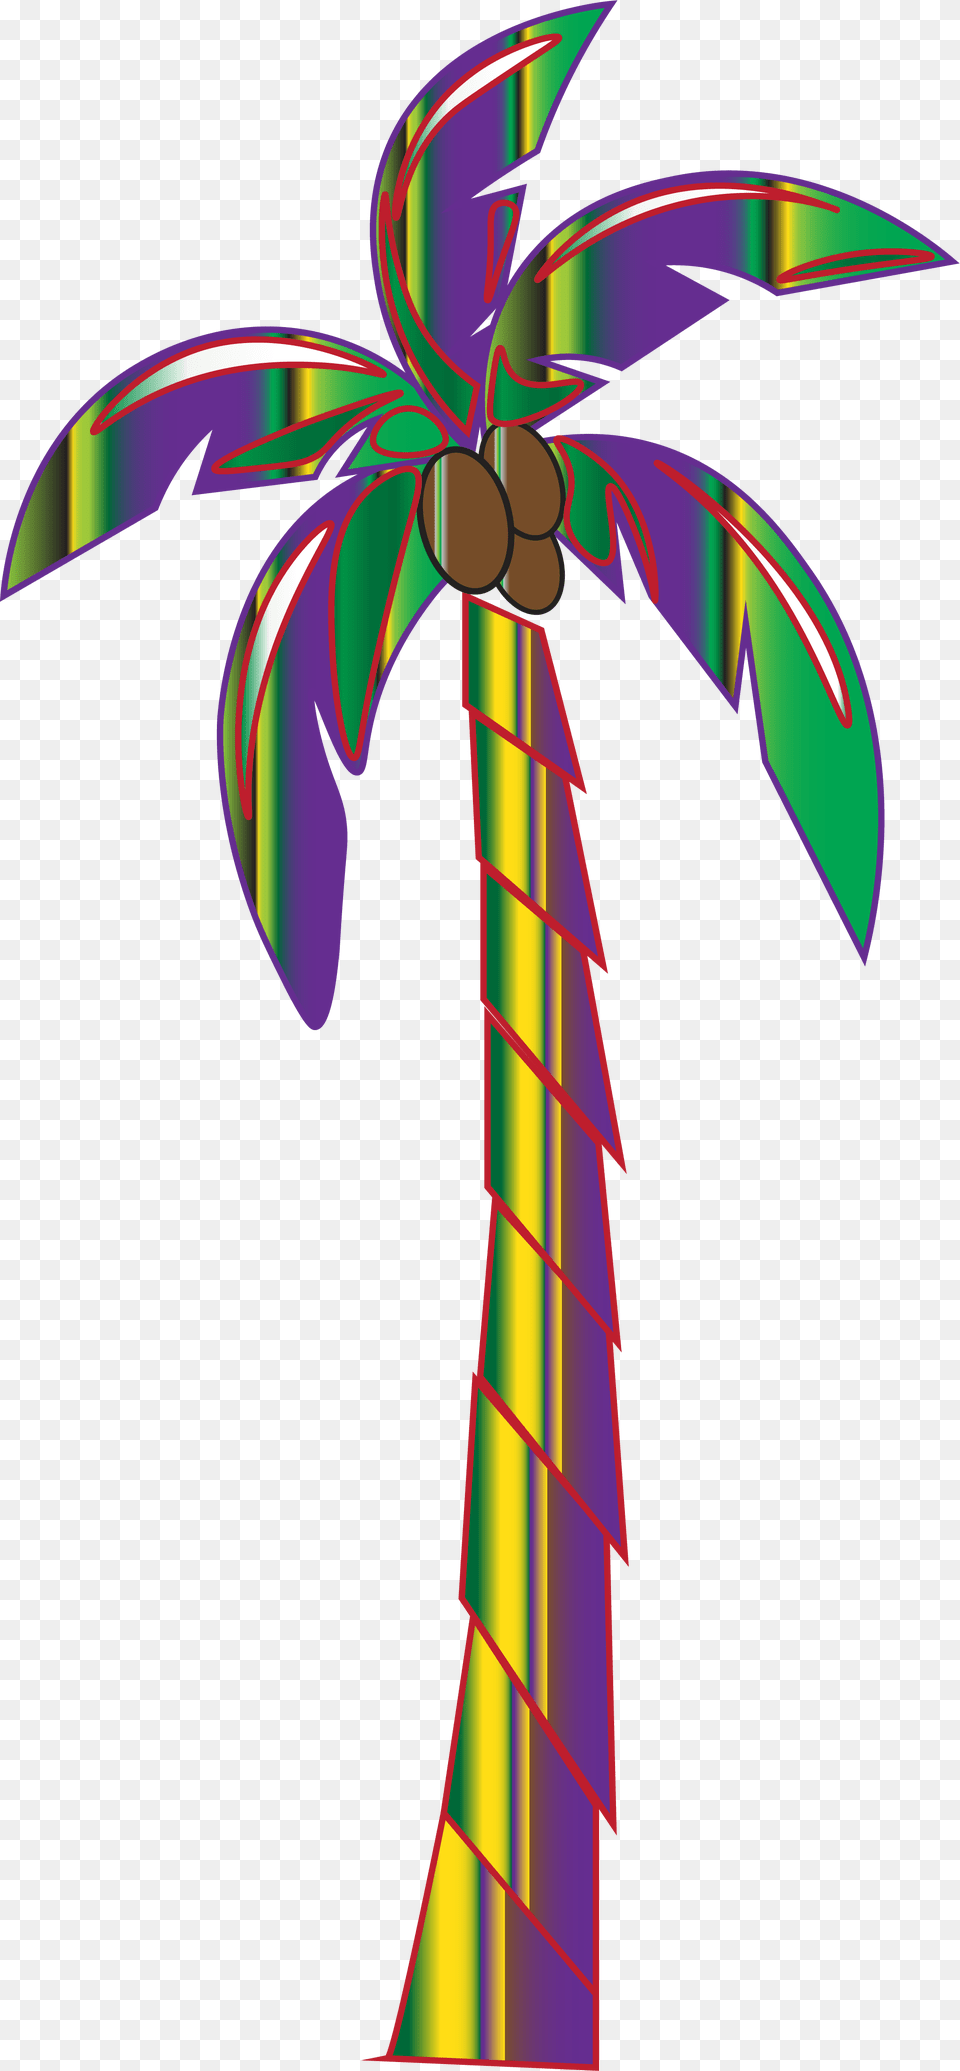 Groovygutta X Palm Trippy Tree Groovygutta Trippy, Palm Tree, Plant, Cross, Symbol Png